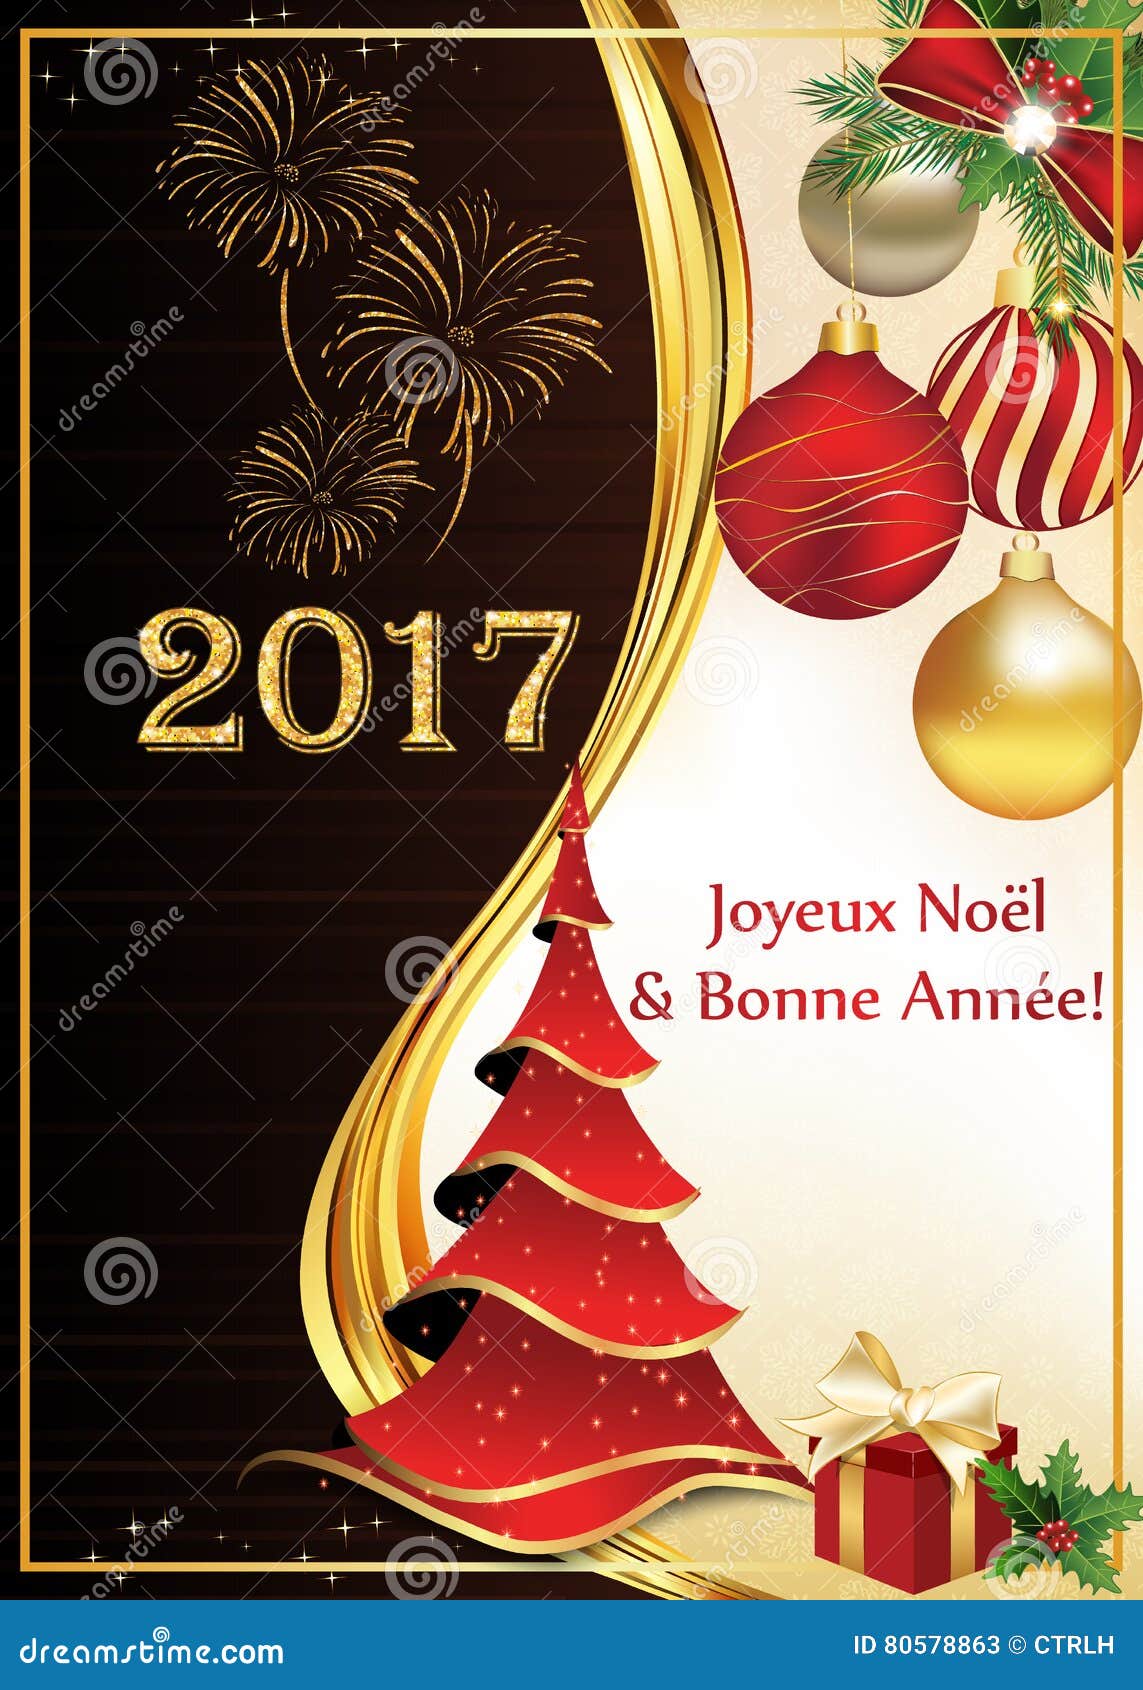 Francese Buon Natale.Cartolina D Auguri Del Buon Anno E Di Buon Natale In Francese Illustrazione Di Stock Illustrazione Di Bacca Francese 80578863